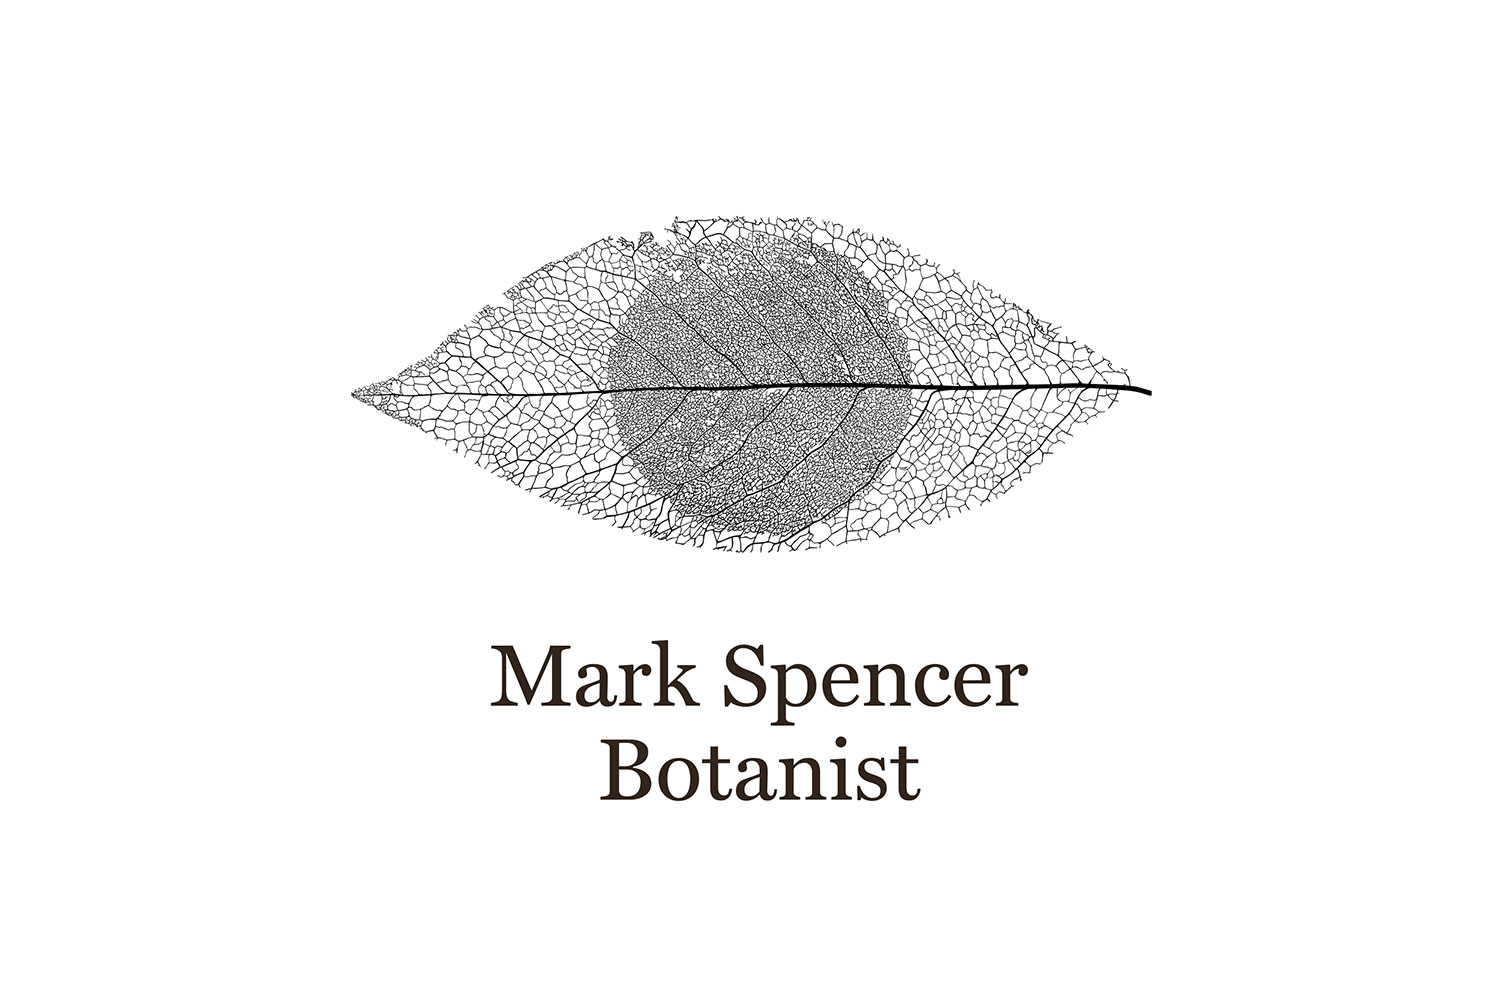 Mark Spencer forensic botanist logo